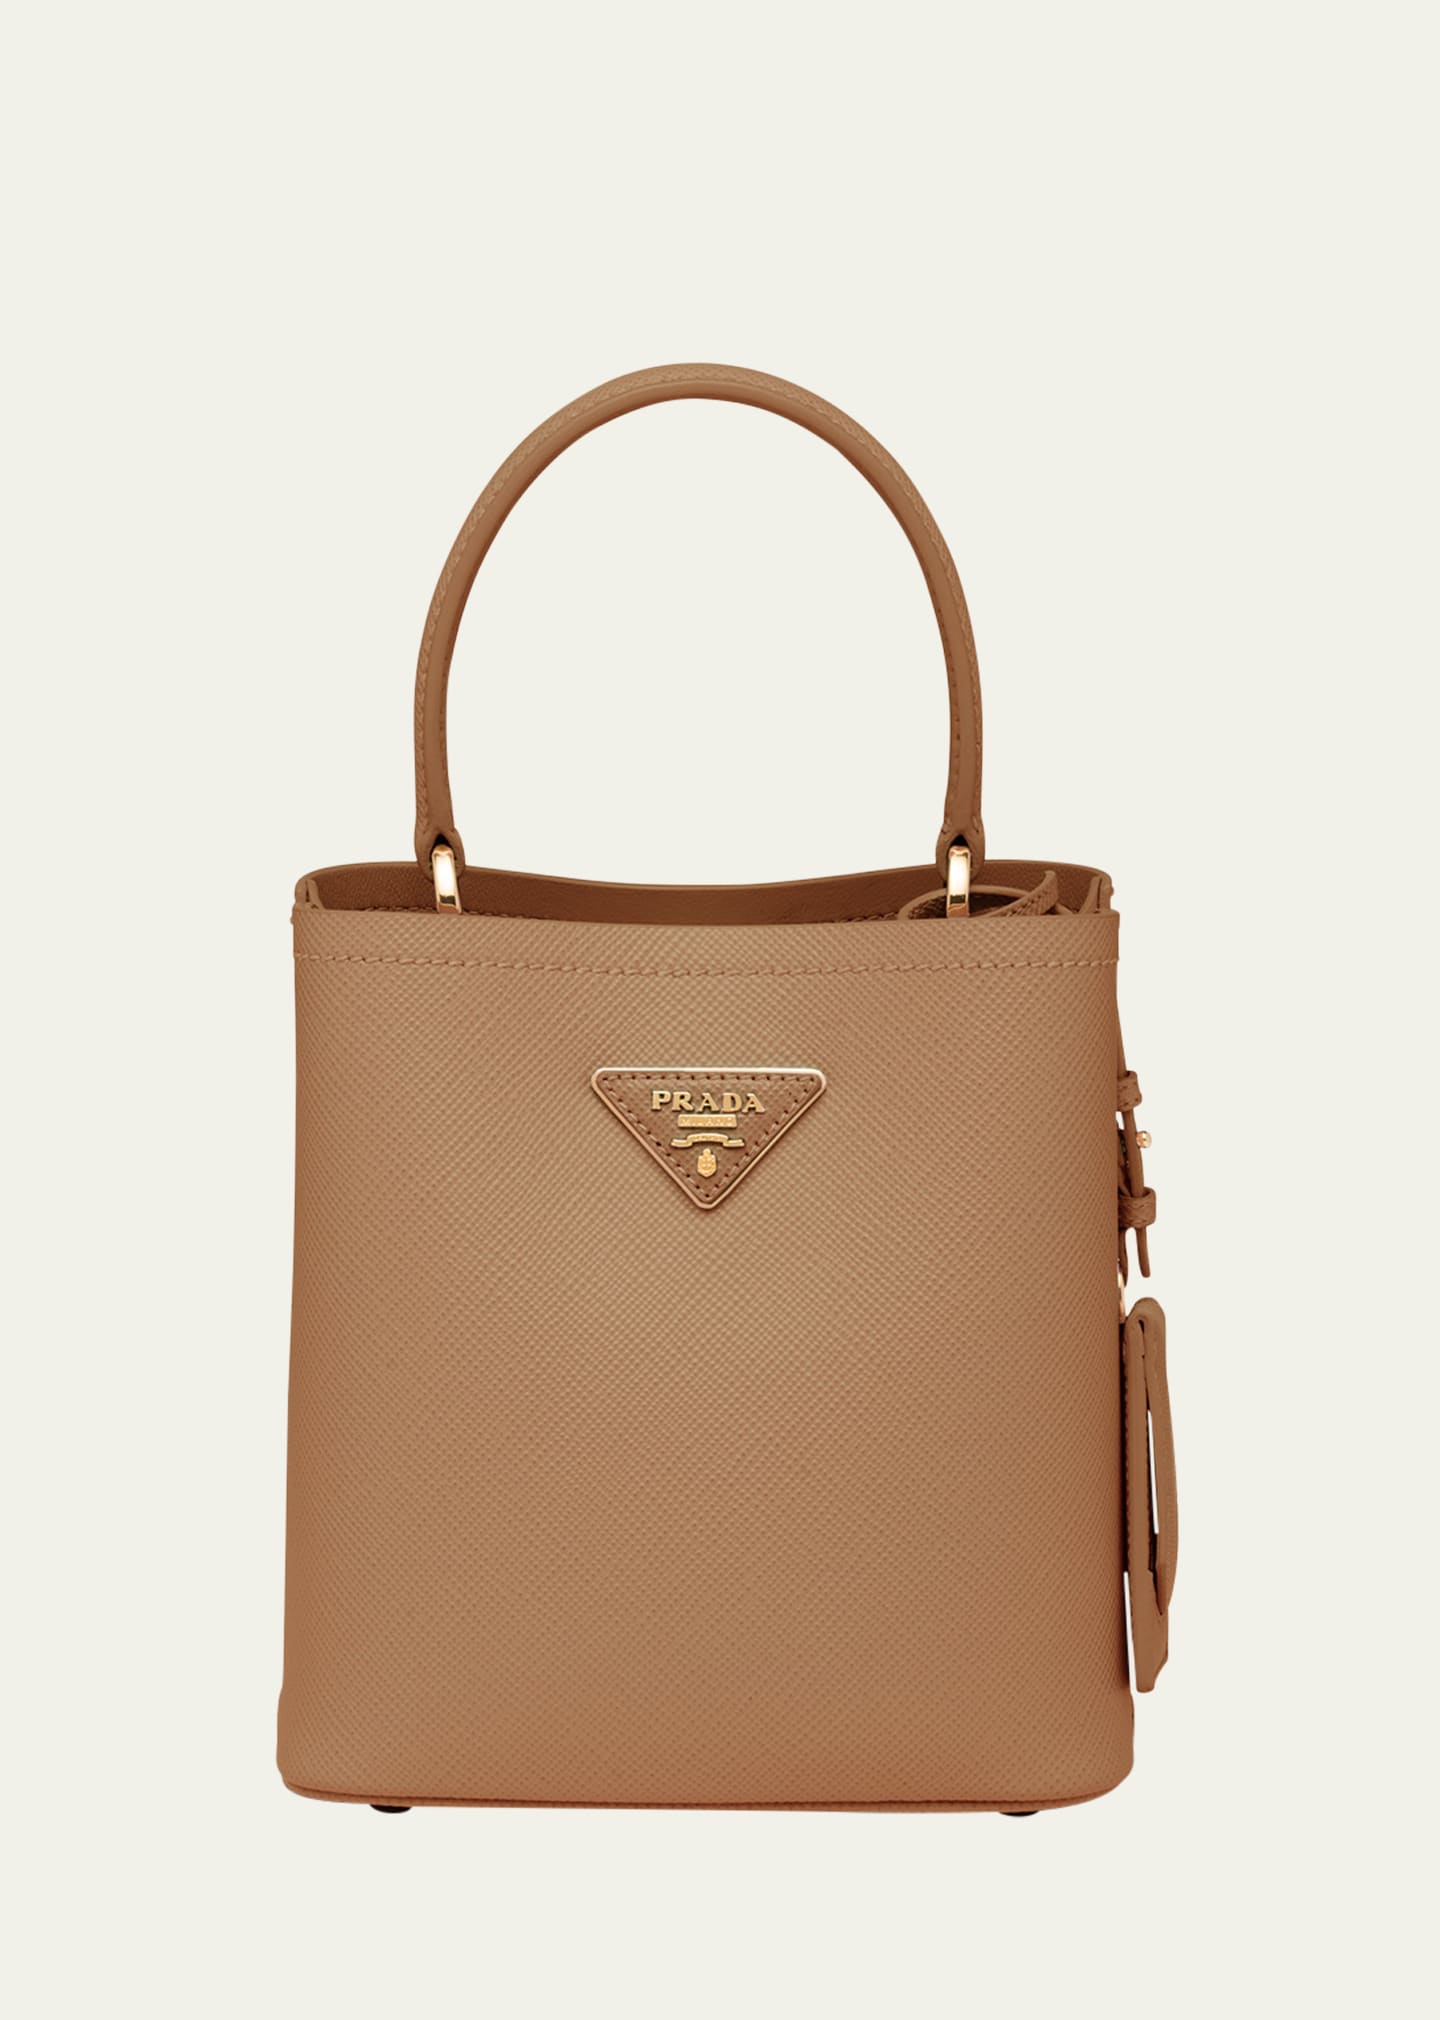 Prada Designer Handbags - Luxury Girlandboys - Medium